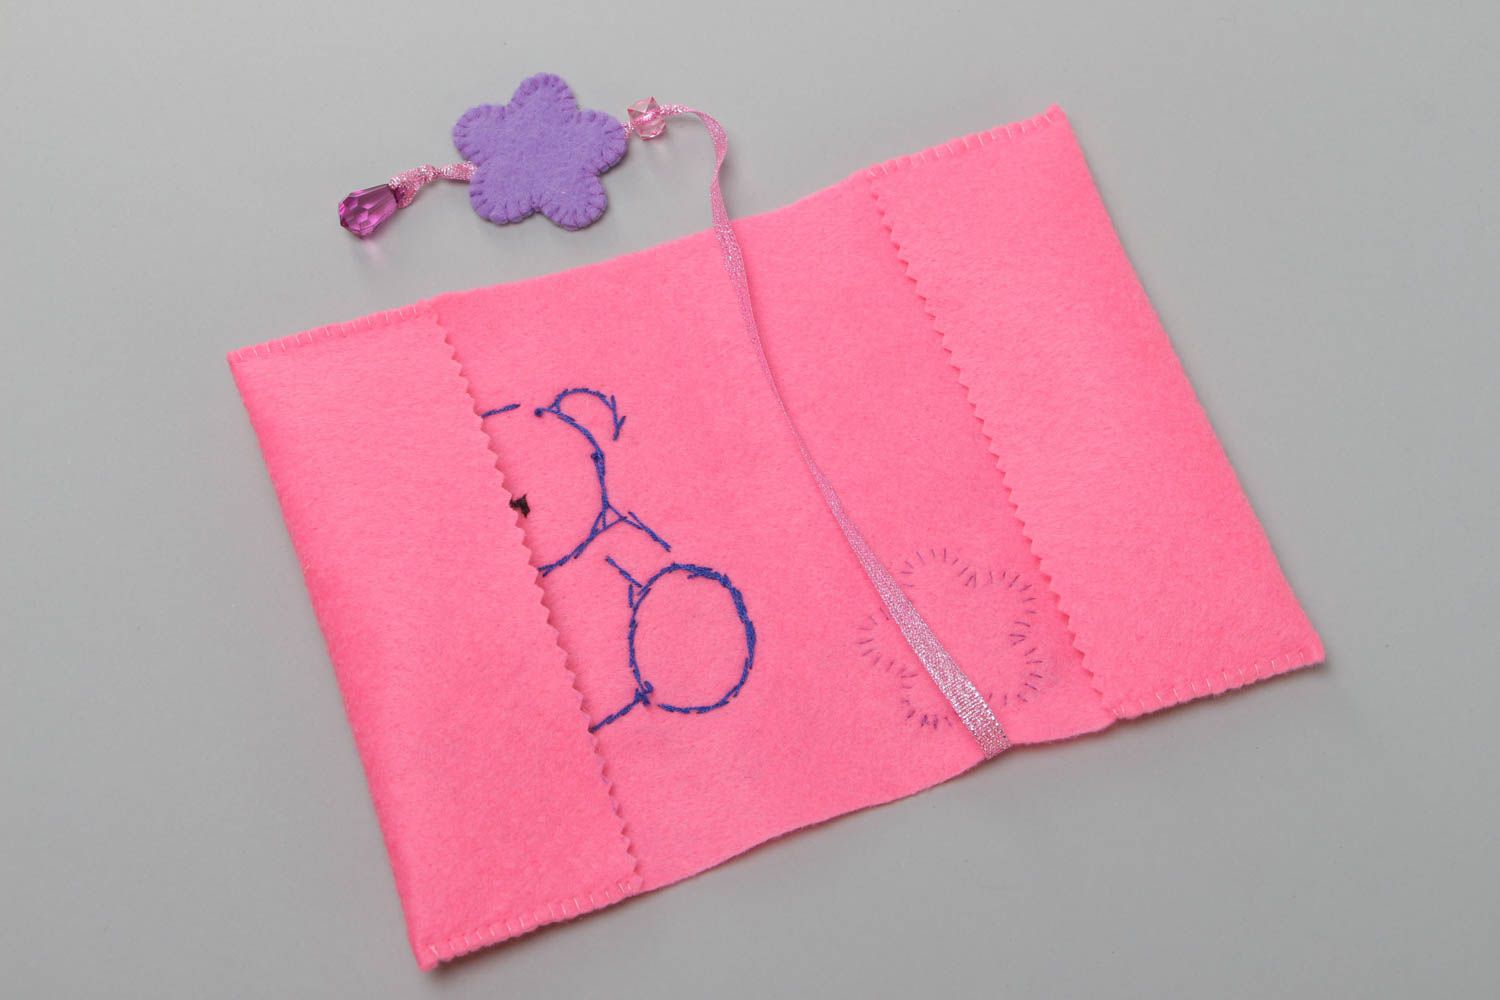 Handmade Passhülle aus Filz mit Applikation in Form des Bären für Mädchen foto 3